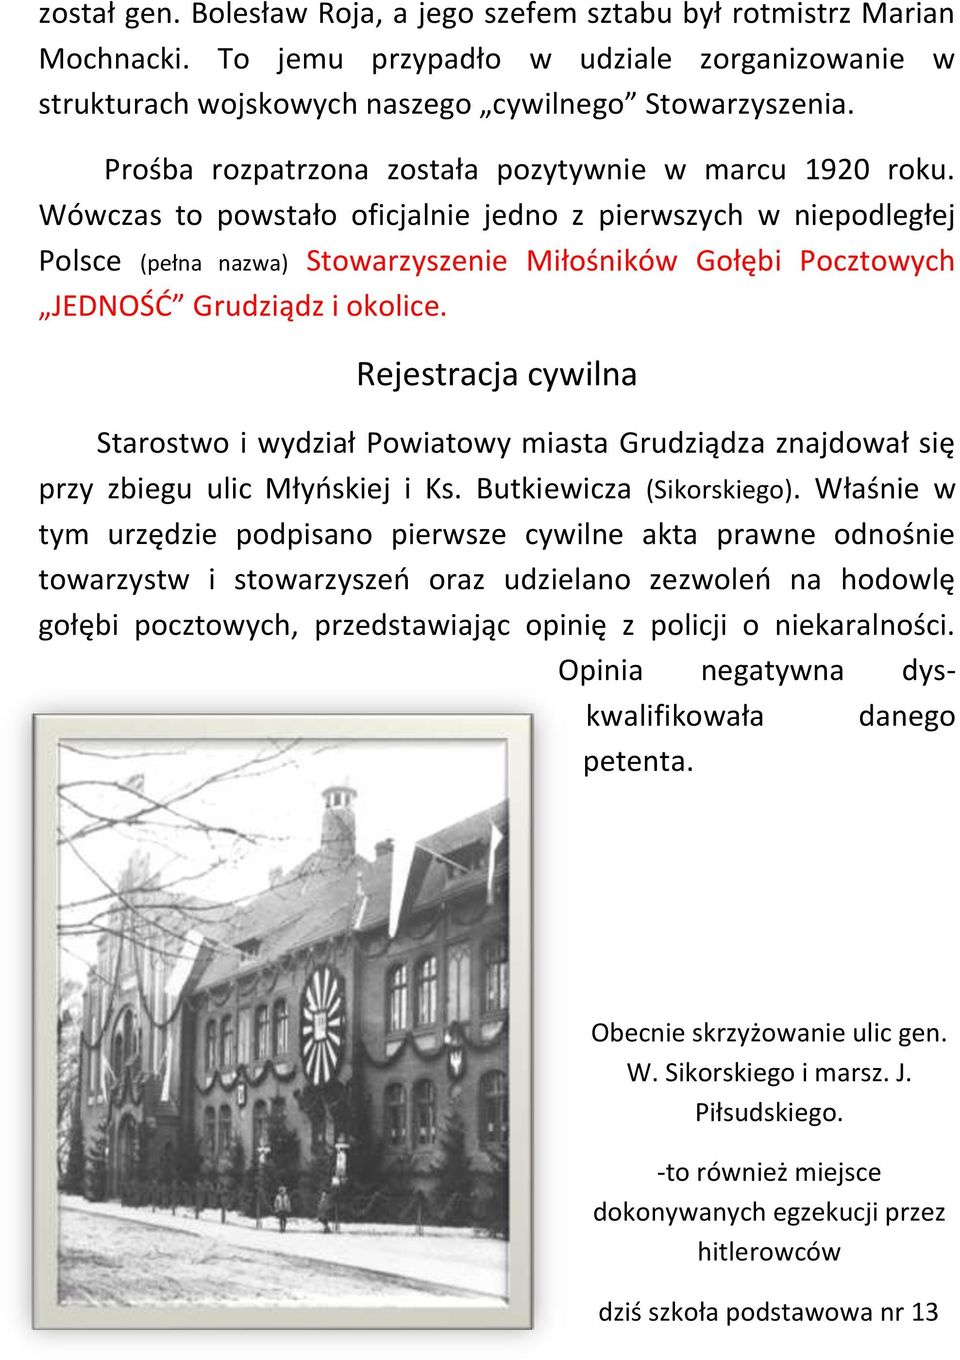 Wówczas to powstało oficjalnie jedno z pierwszych w niepodległej Polsce (pełna nazwa) Stowarzyszenie Miłośników Gołębi Pocztowych JEDNOŚĆ Grudziądz i okolice.